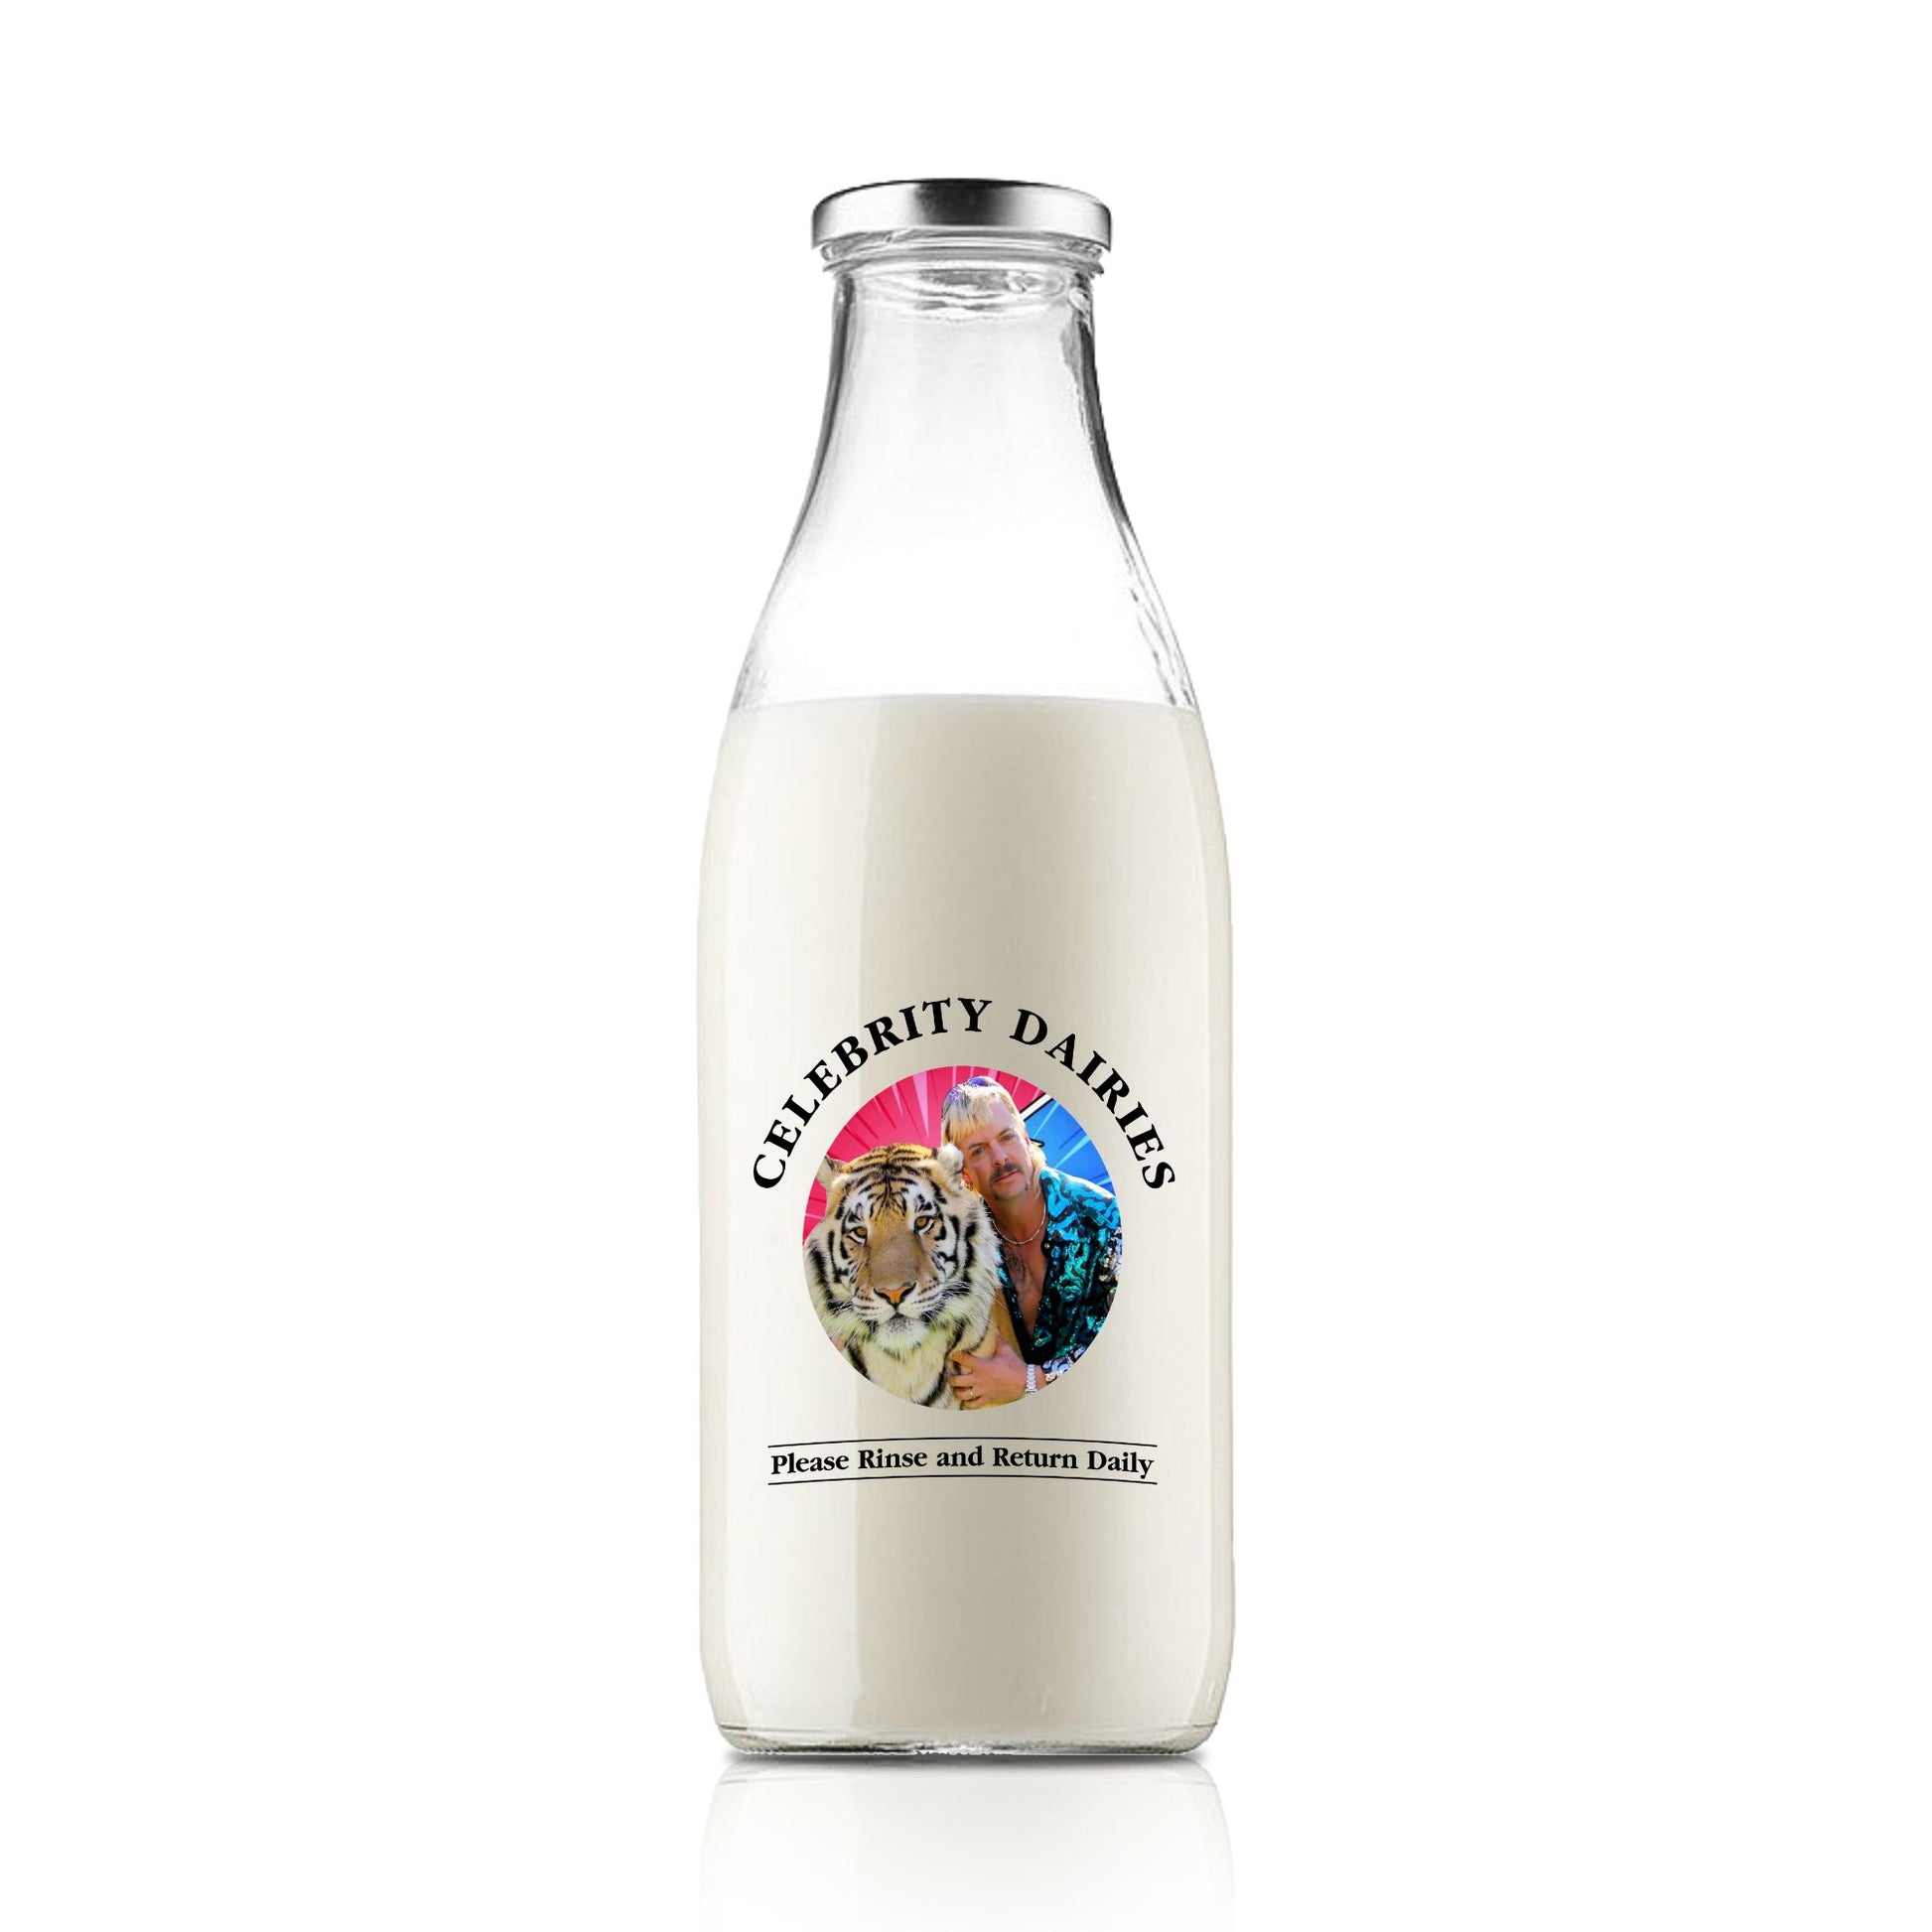 Tiger King Celebrity Milk bottle